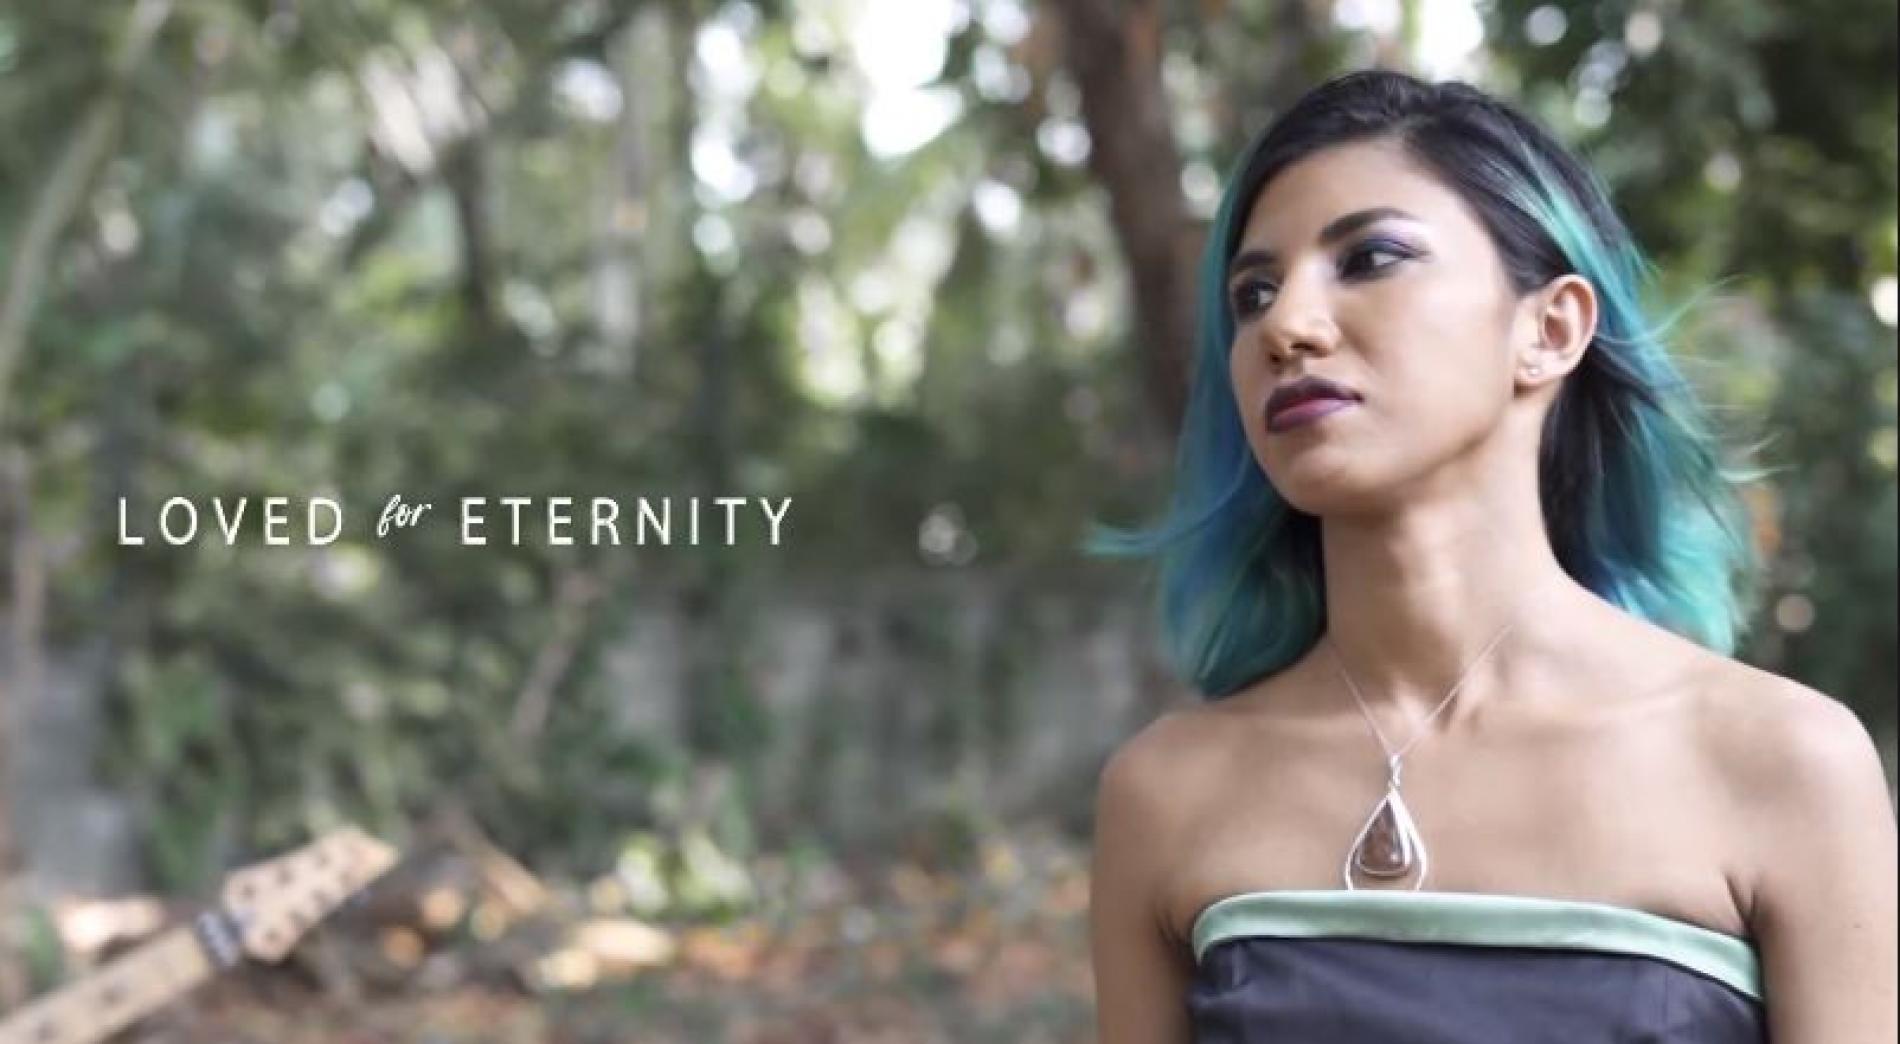 New Music : Shehara – Loved For Eternity